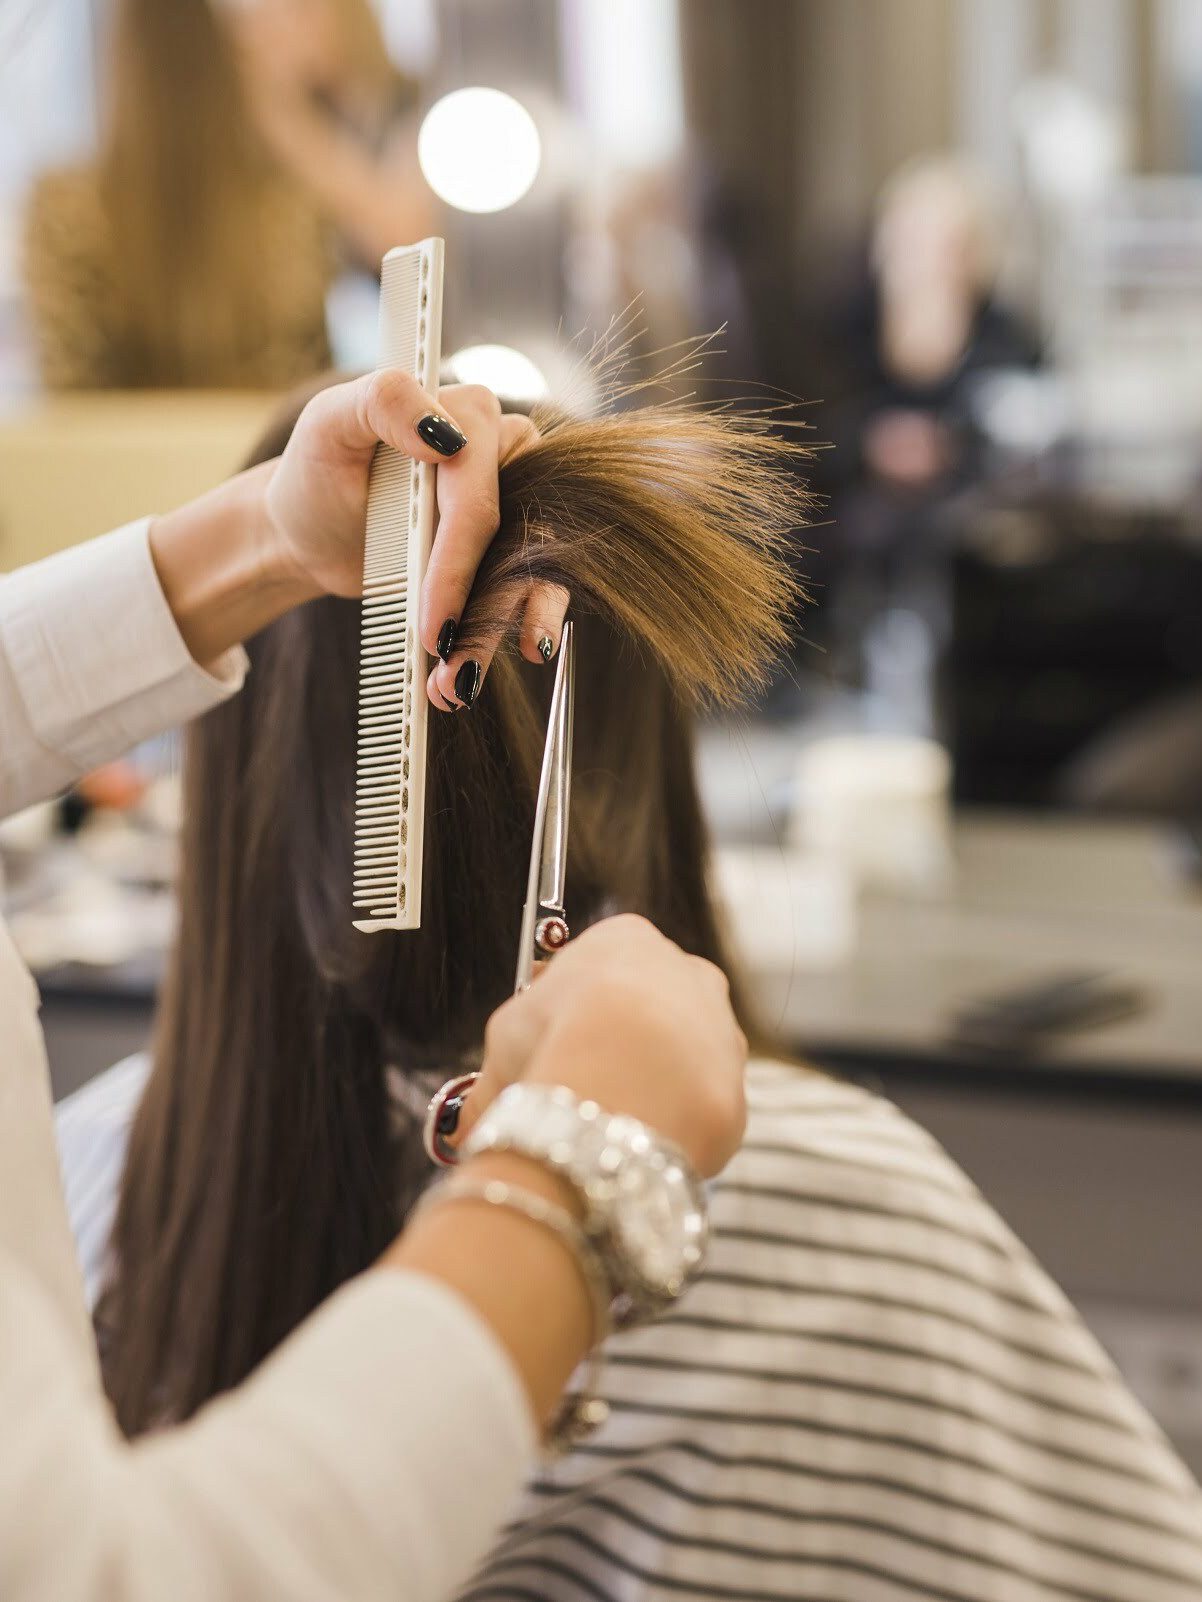 A hair stylist cutting a woman's hair at a hair salon